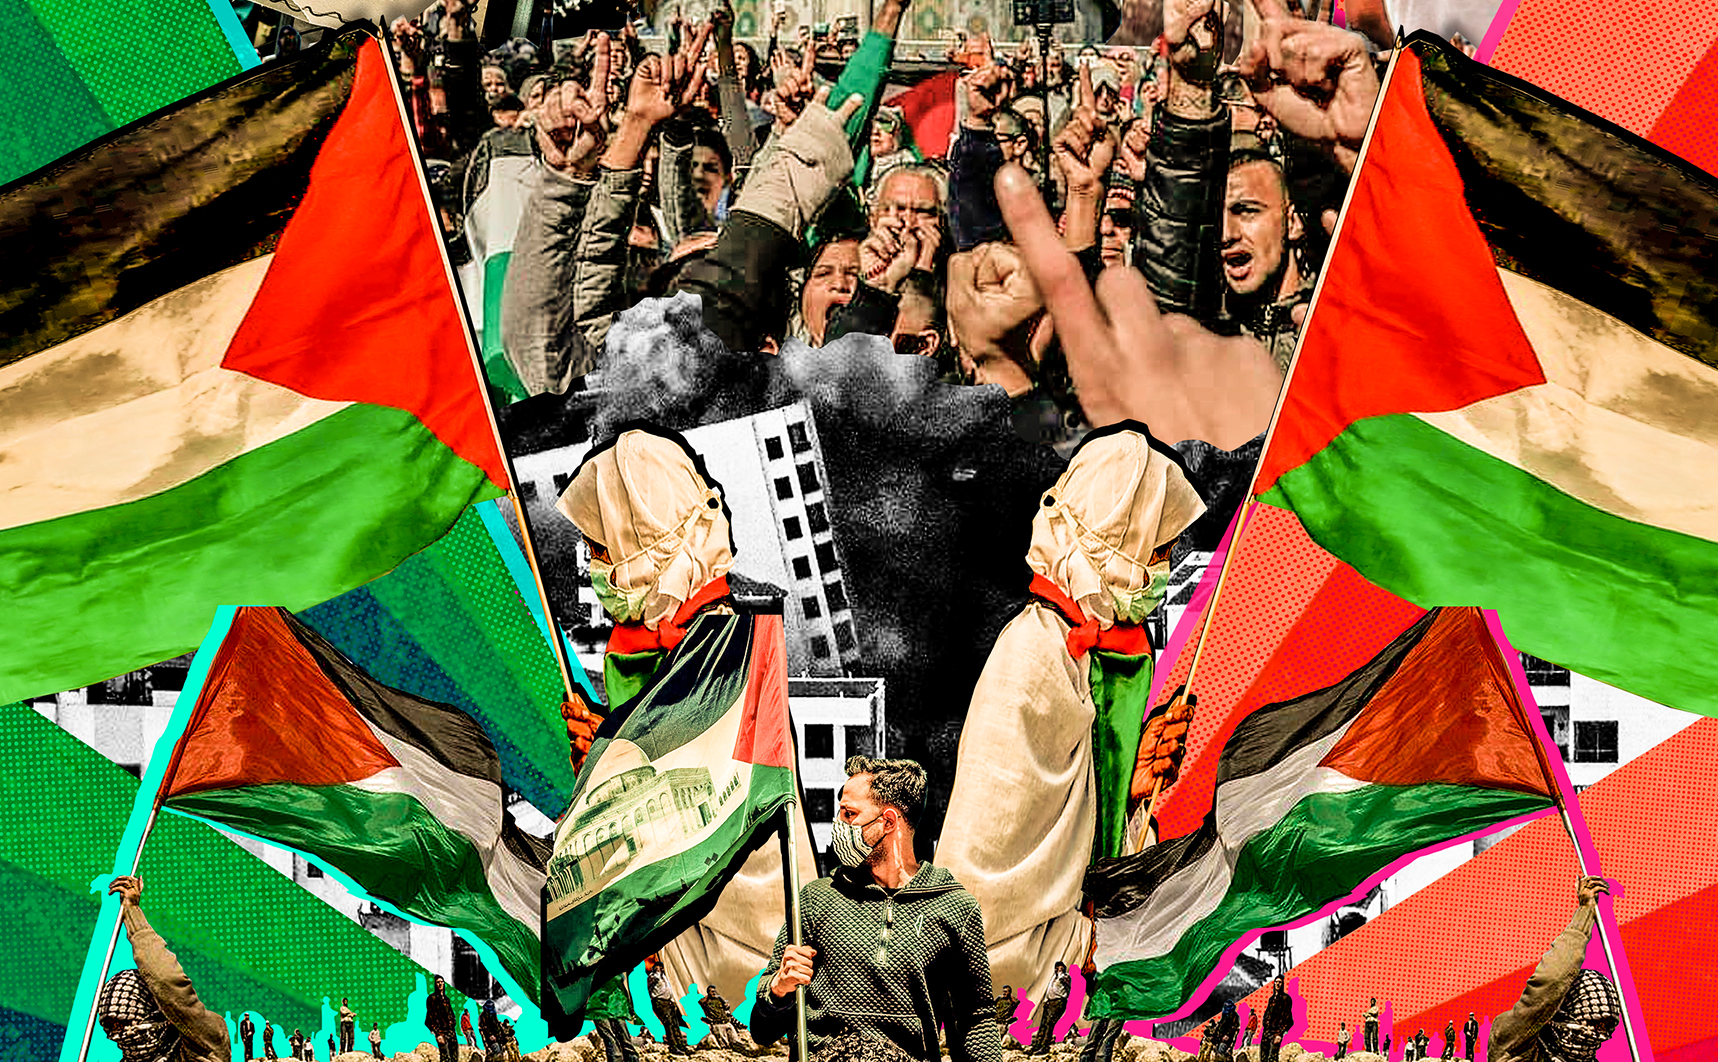 [Dossier] 73 Jahre Nakba: Perspektiven für die Befreiung